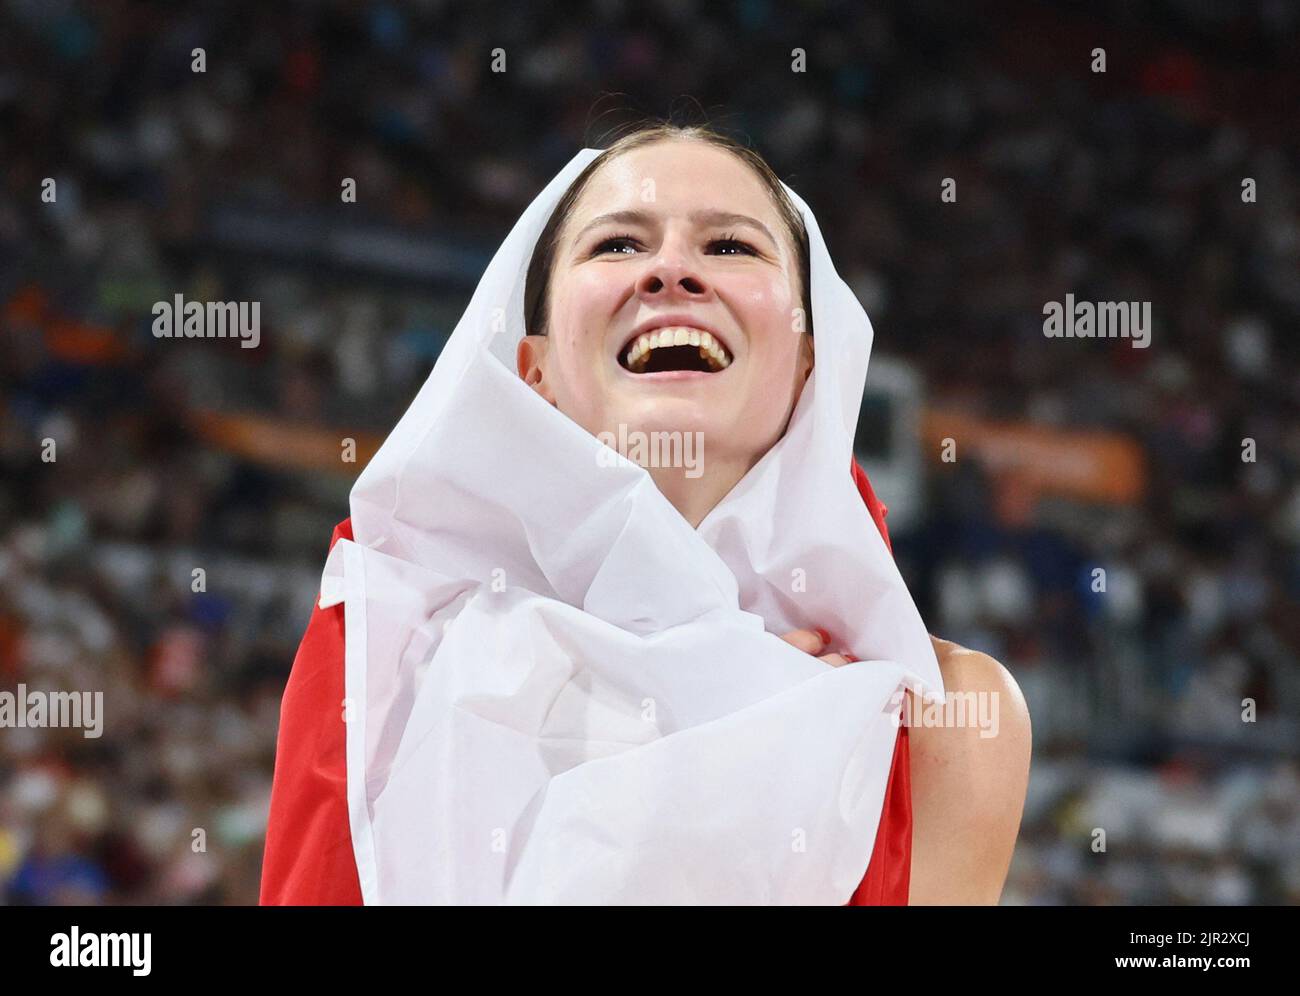 Championnats d'Europe 2022 - Athlétisme - Olympiastadion, Munich, Allemagne - 21 août 2022 la Pologne Pia Skrzyszowska célèbre après avoir remporté l'or dans la finale féminine de 100m haies REUTERS/Wolfgang Rattay Banque D'Images